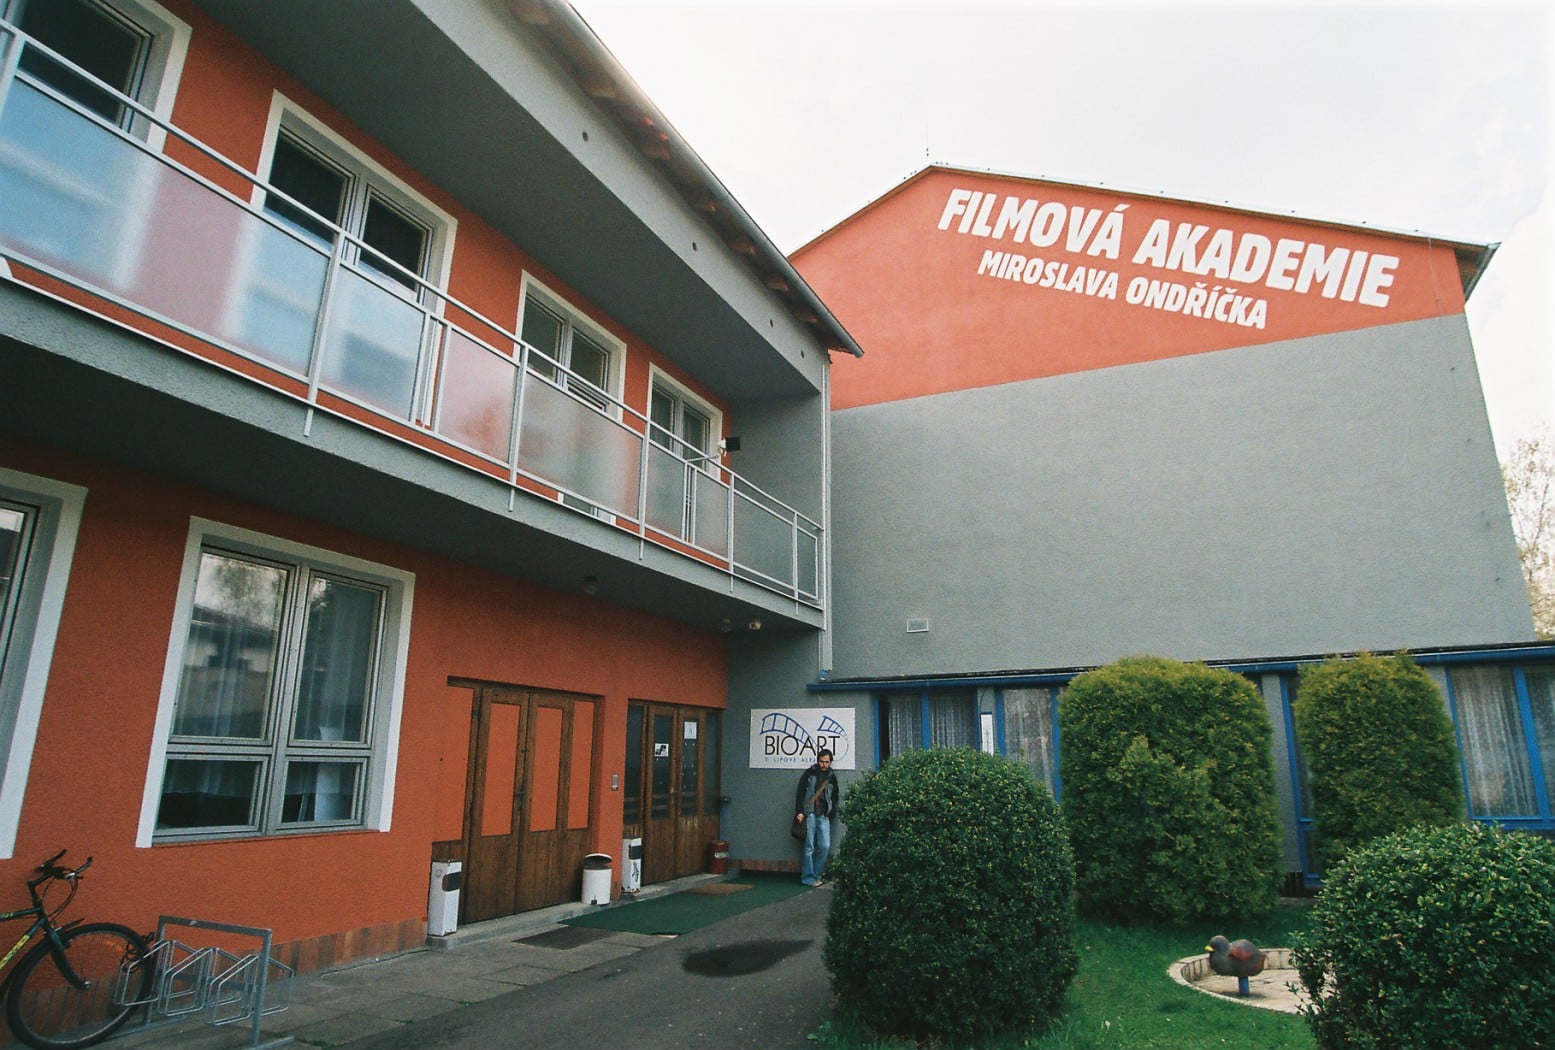 Film Academy of Miroslav Ondricek in Pisek